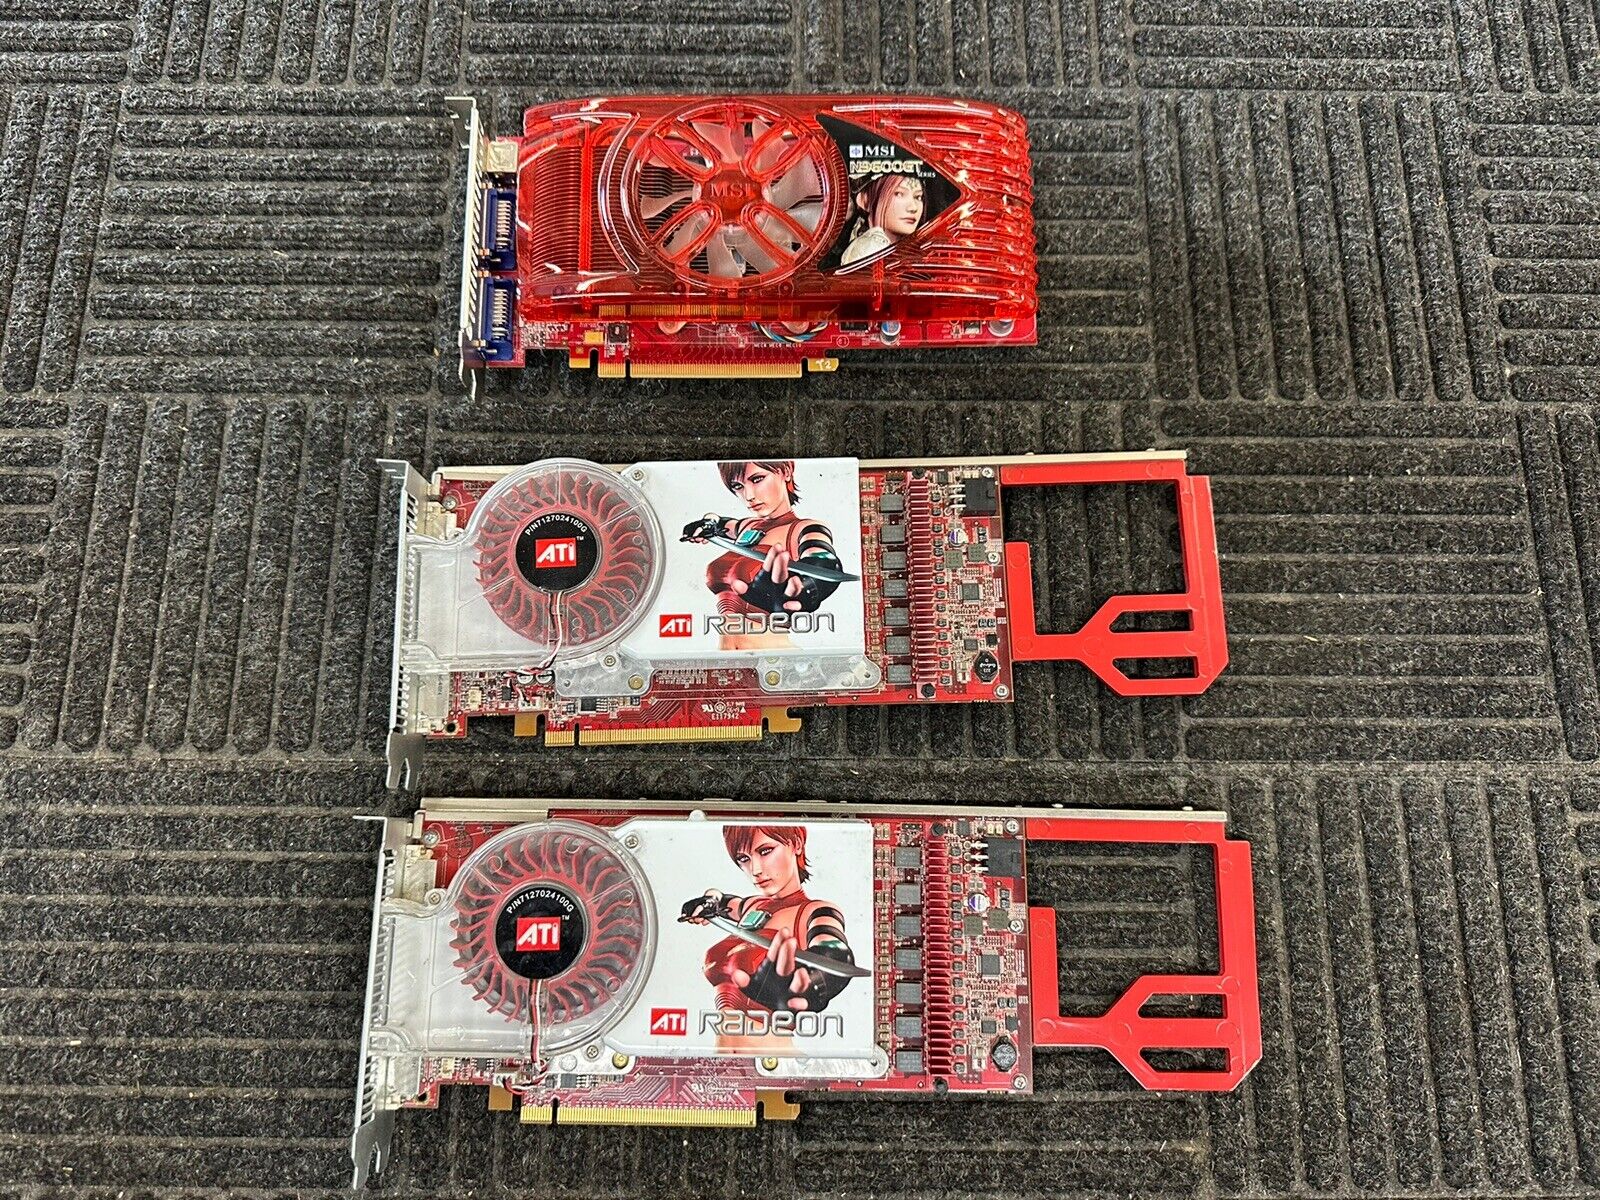 Lot Of 3 Video Graphics Card (2) ATI Radeon & (1) MSI N9600GT 